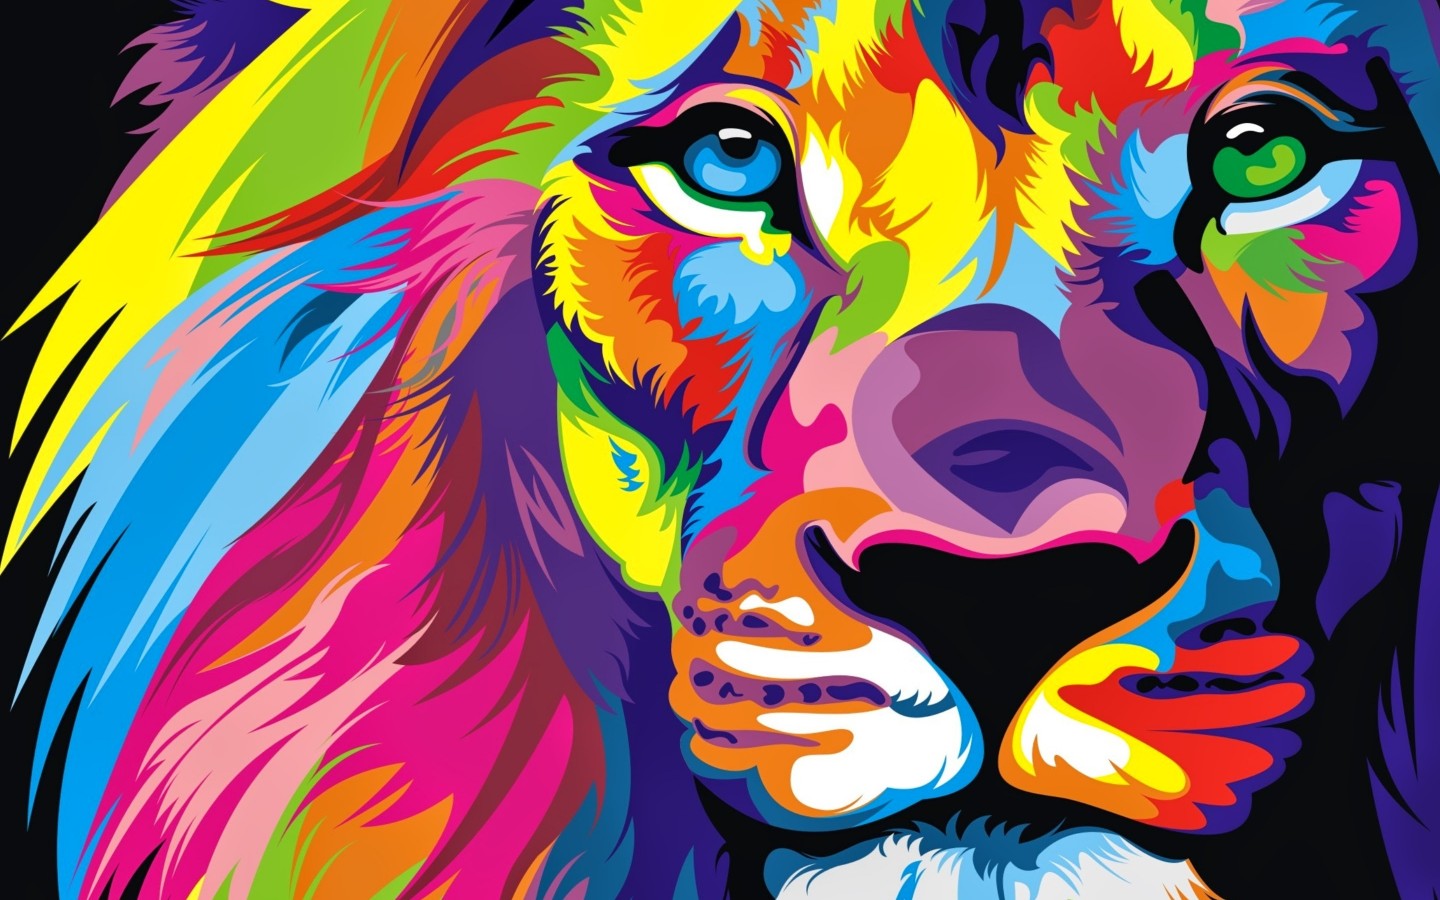 papel pintado colorido del león,ilustración,arte,pintura,arte moderno,felidae